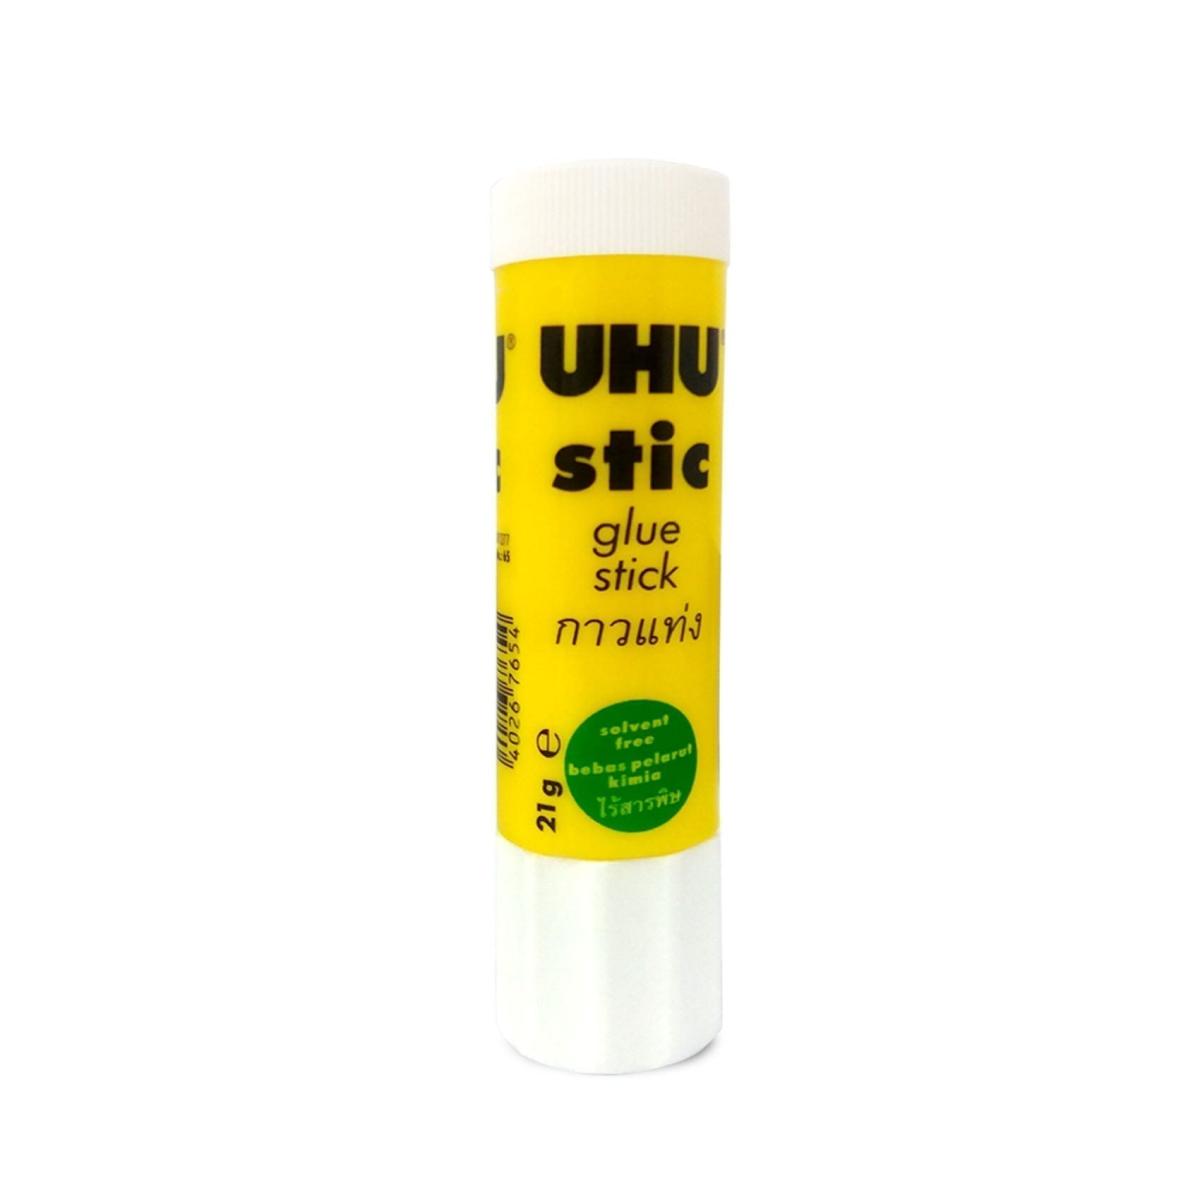 Buy UHU Glue Stick Solvent Free 21Gm + Glue Stick 8.2Gm + All